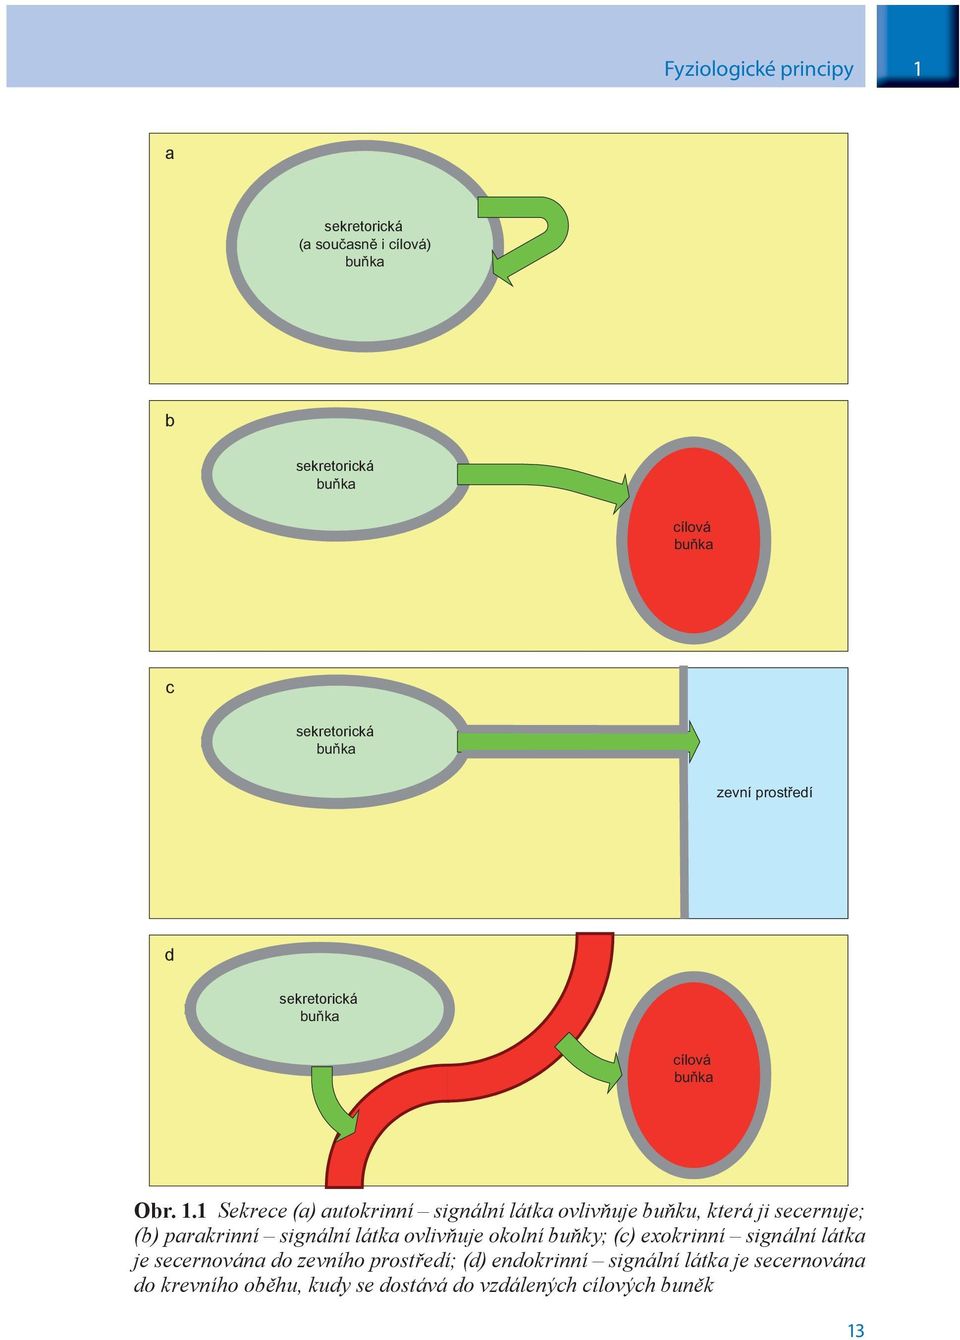 1 Sekrece (a) autokrinní signální látka ovlivňuje buňku, která ji secernuje; (b) parakrinní signální